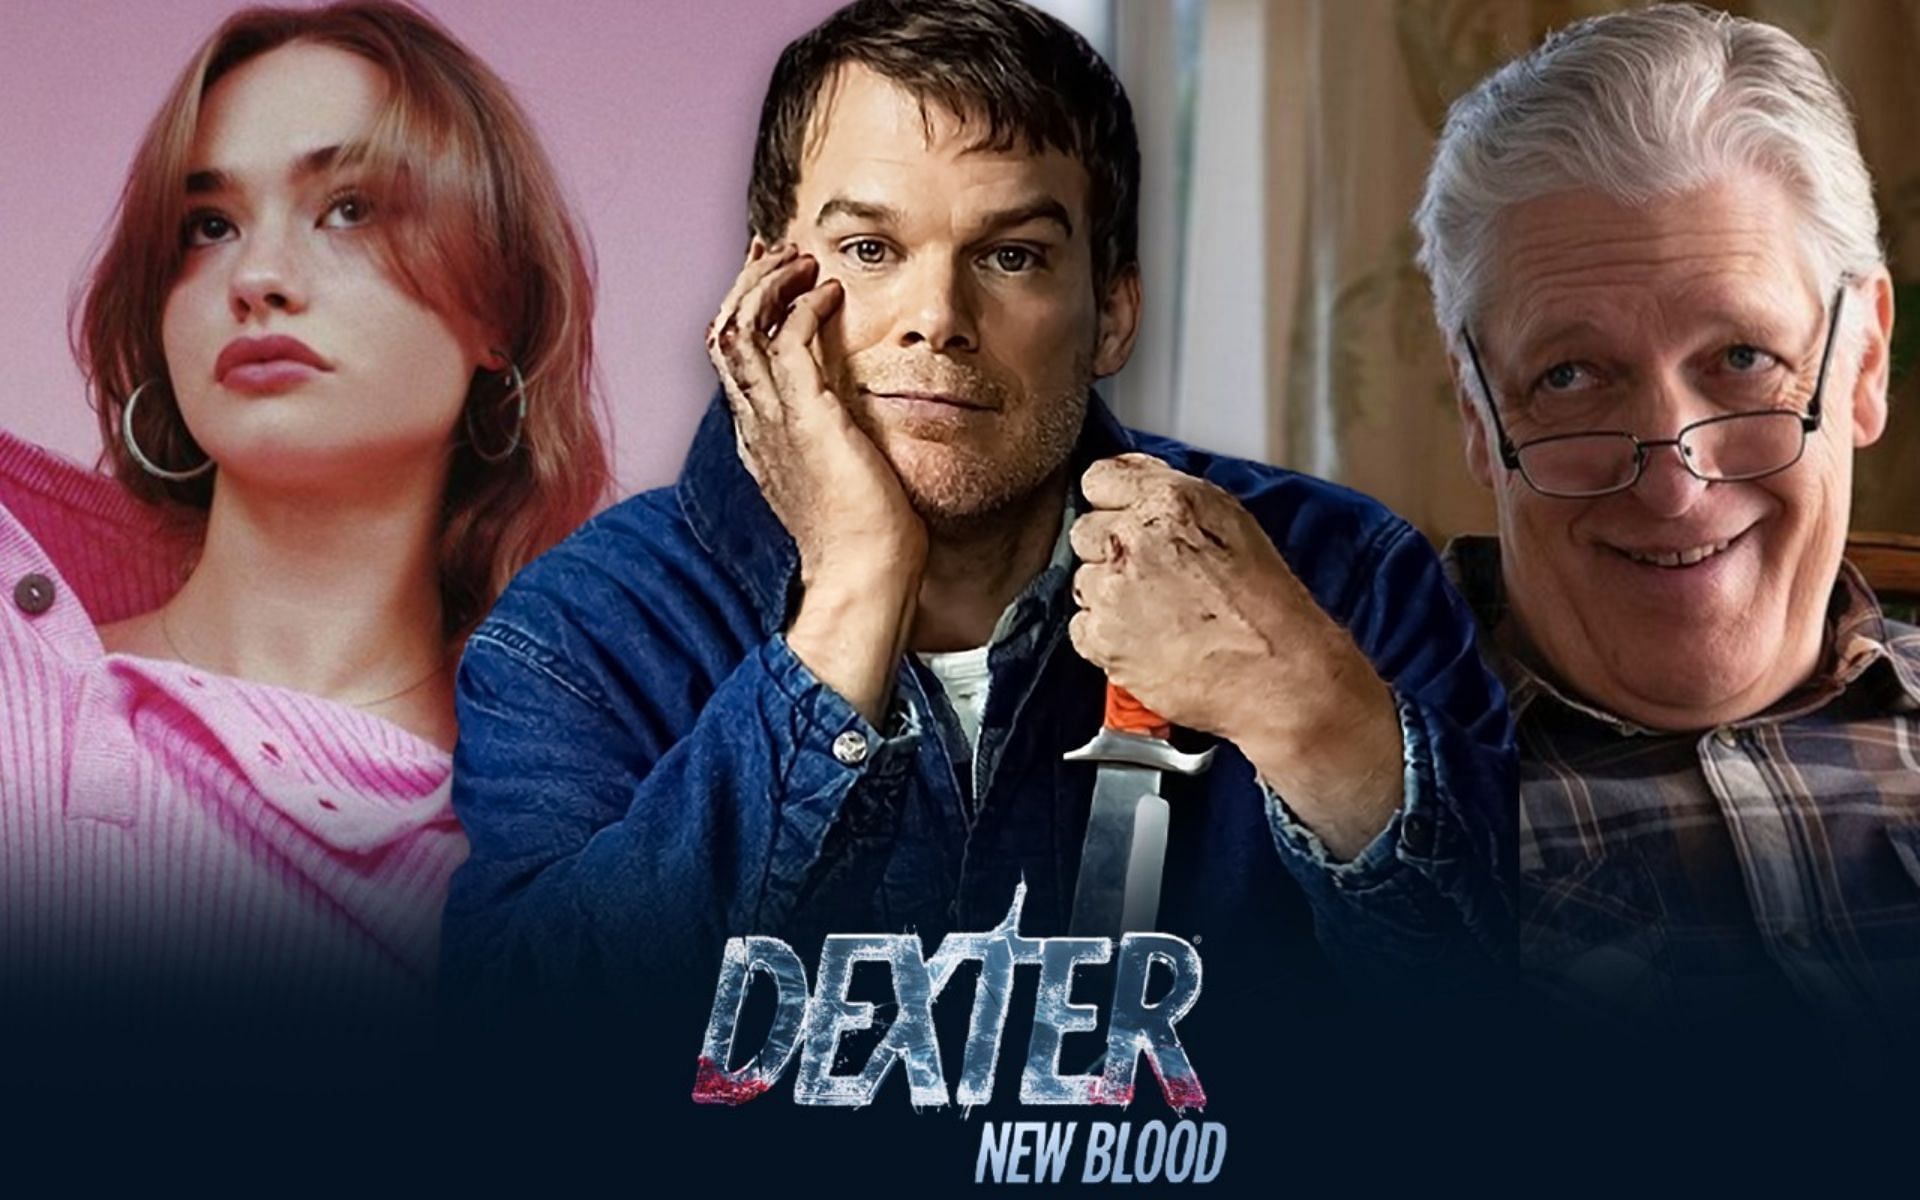 Dexter cast